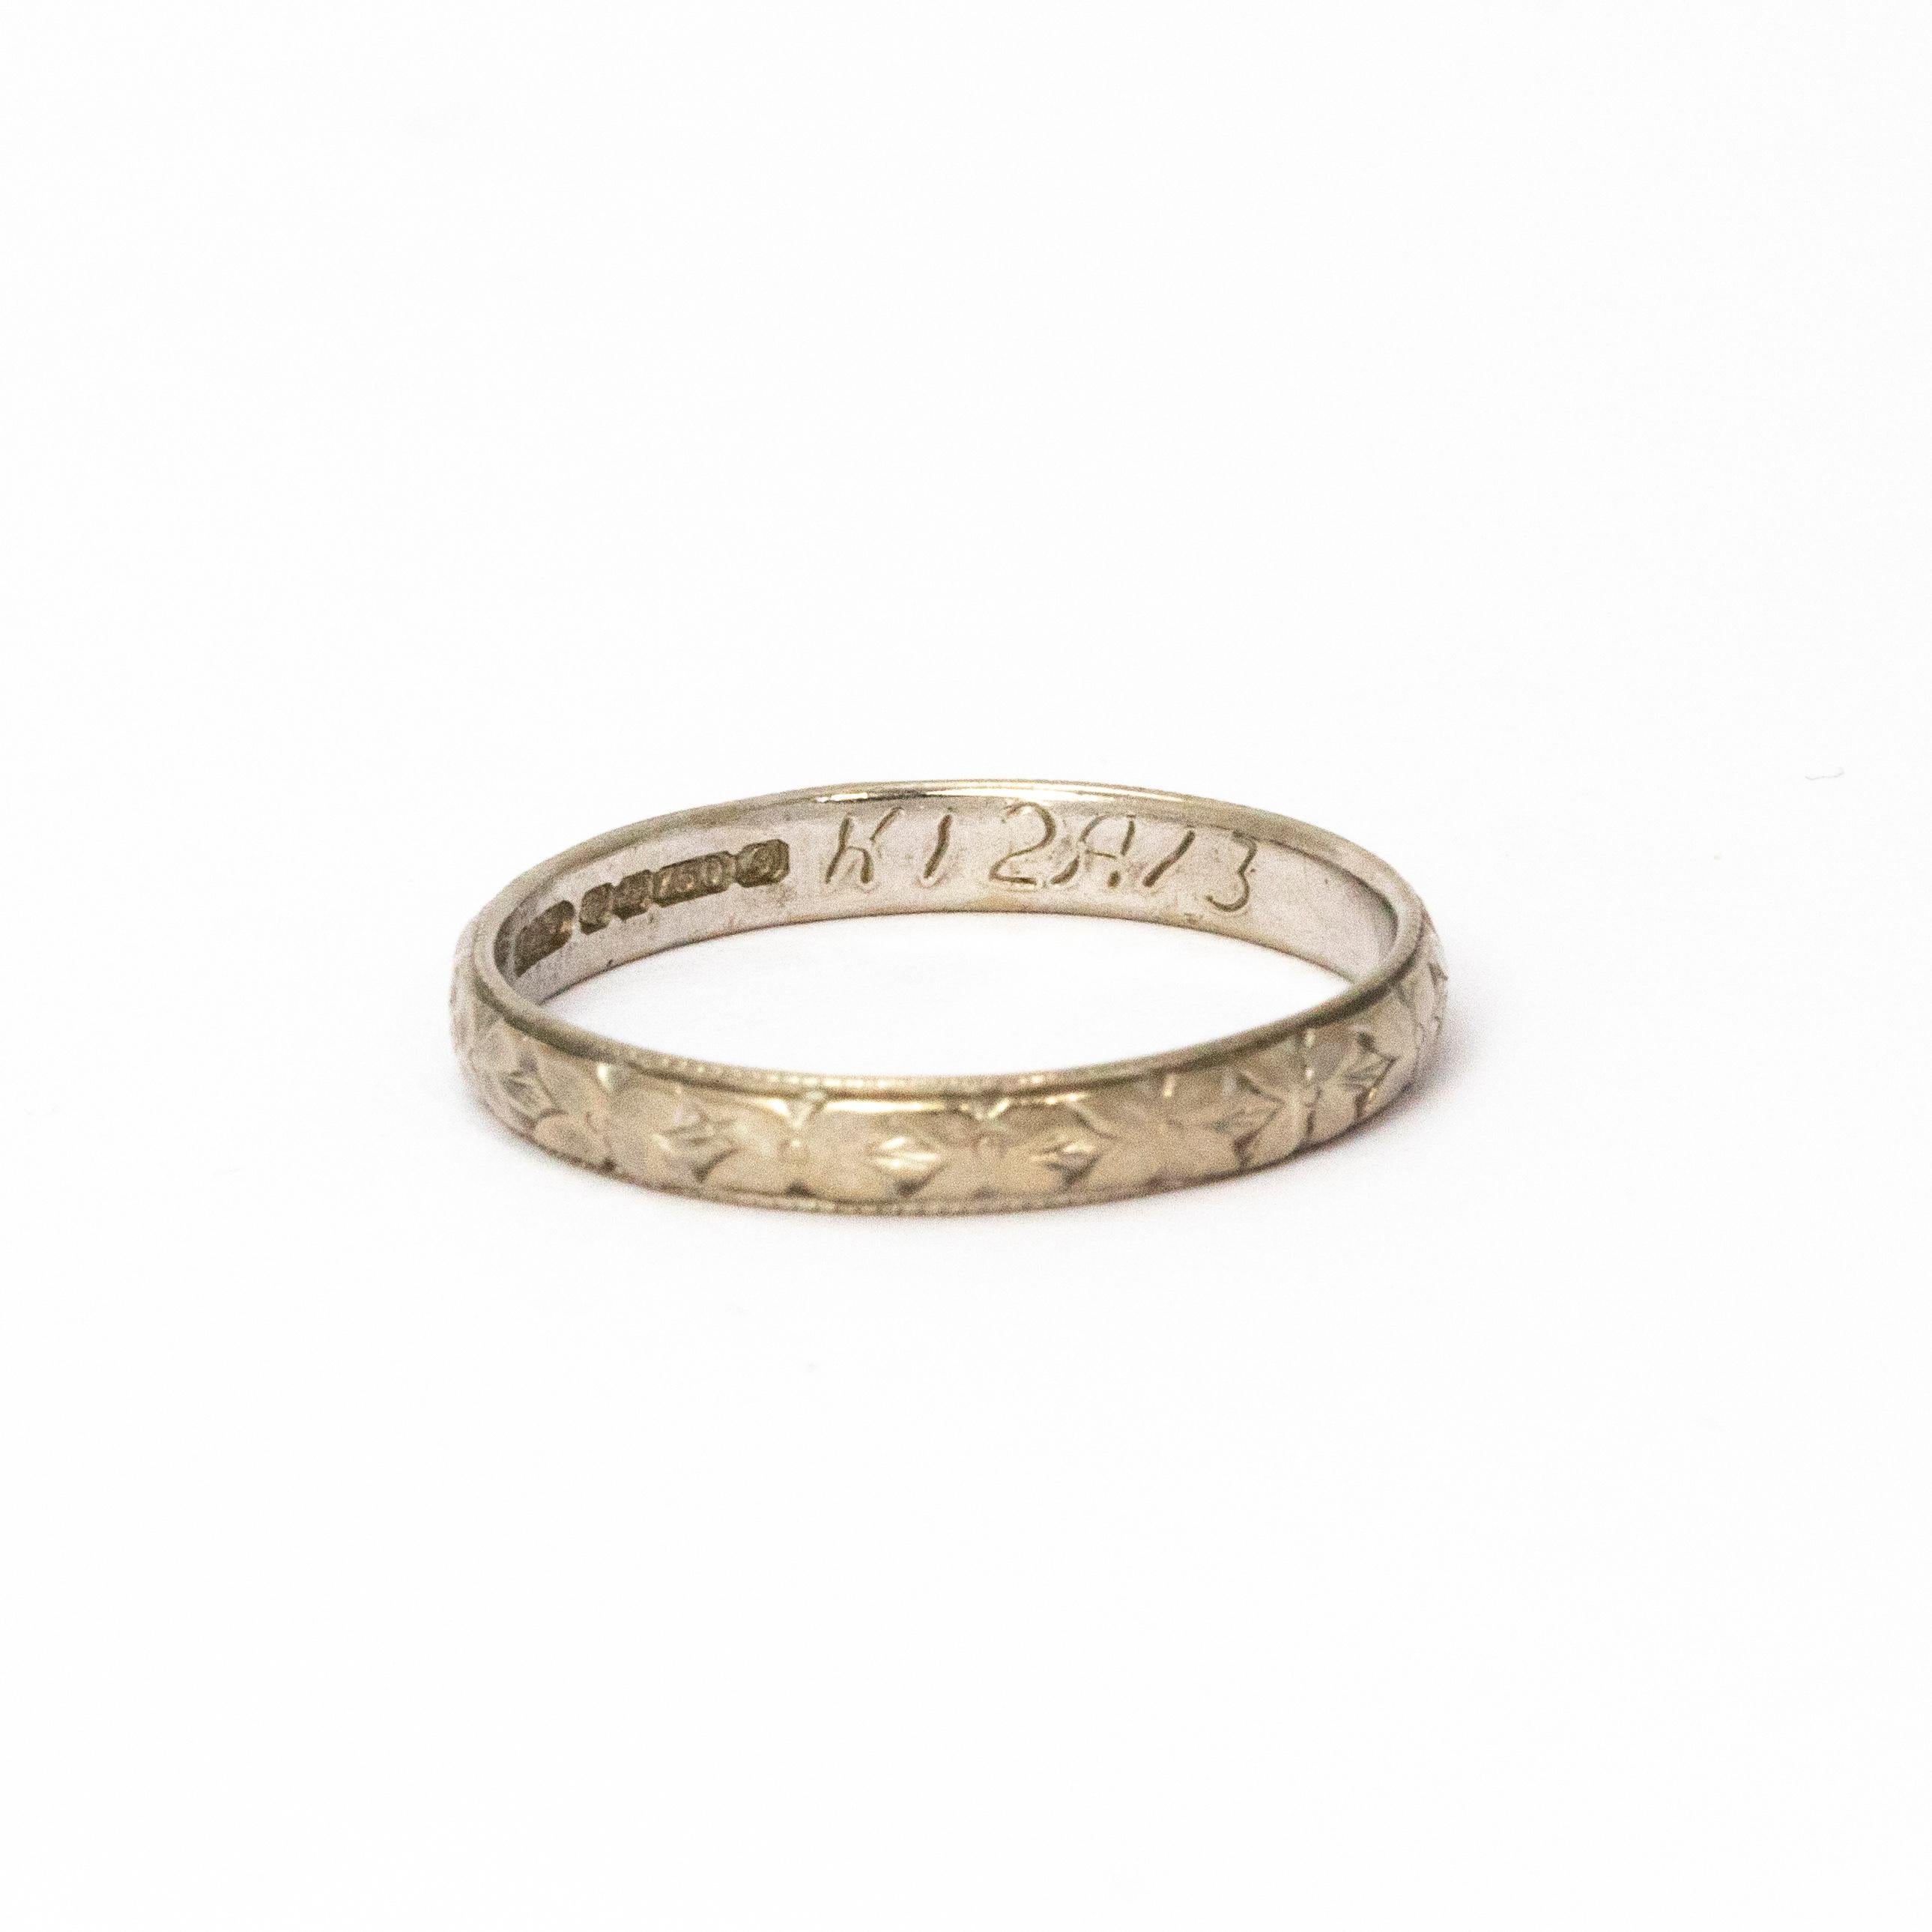 Ein eleganter Art-Déco-Ring. Das Band ist vollständig von Hand ziseliert mit einem schönen Blumen- und Blattmuster. Gefertigt aus 18 Karat Weißgold. 

Ringgröße: Q 1/2 oder 8.5